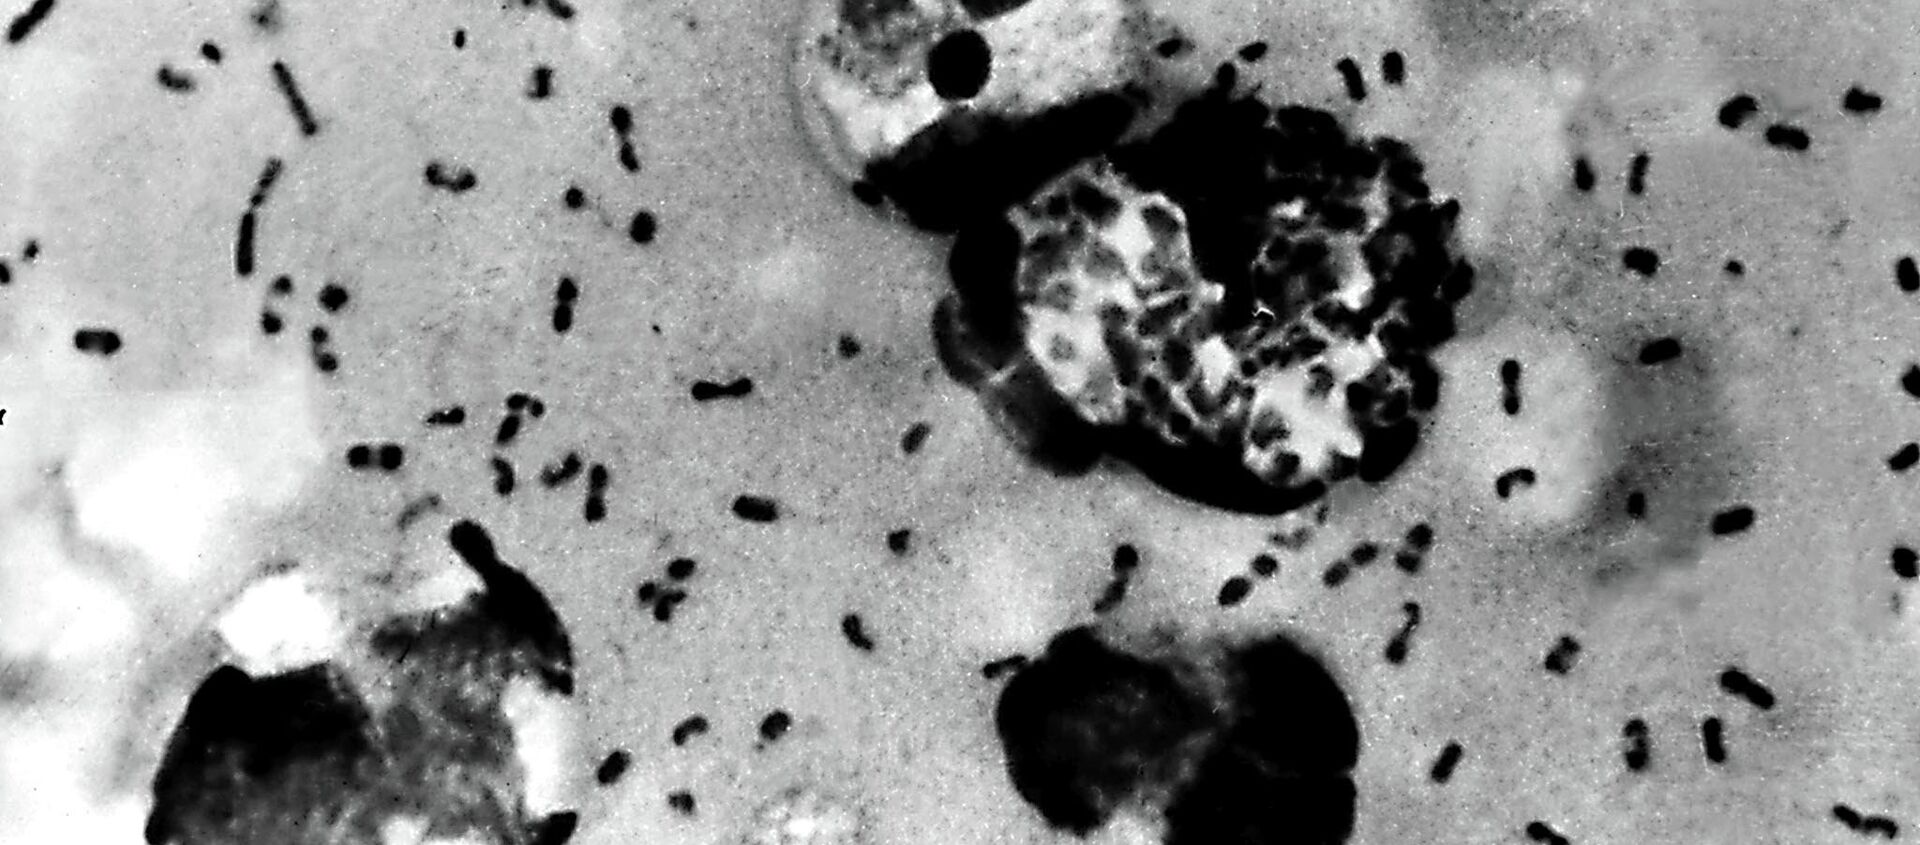 Bactérias da praga bubônica retiradas de um paciente (imagem de arquivo) - Sputnik Brasil, 1920, 07.07.2020